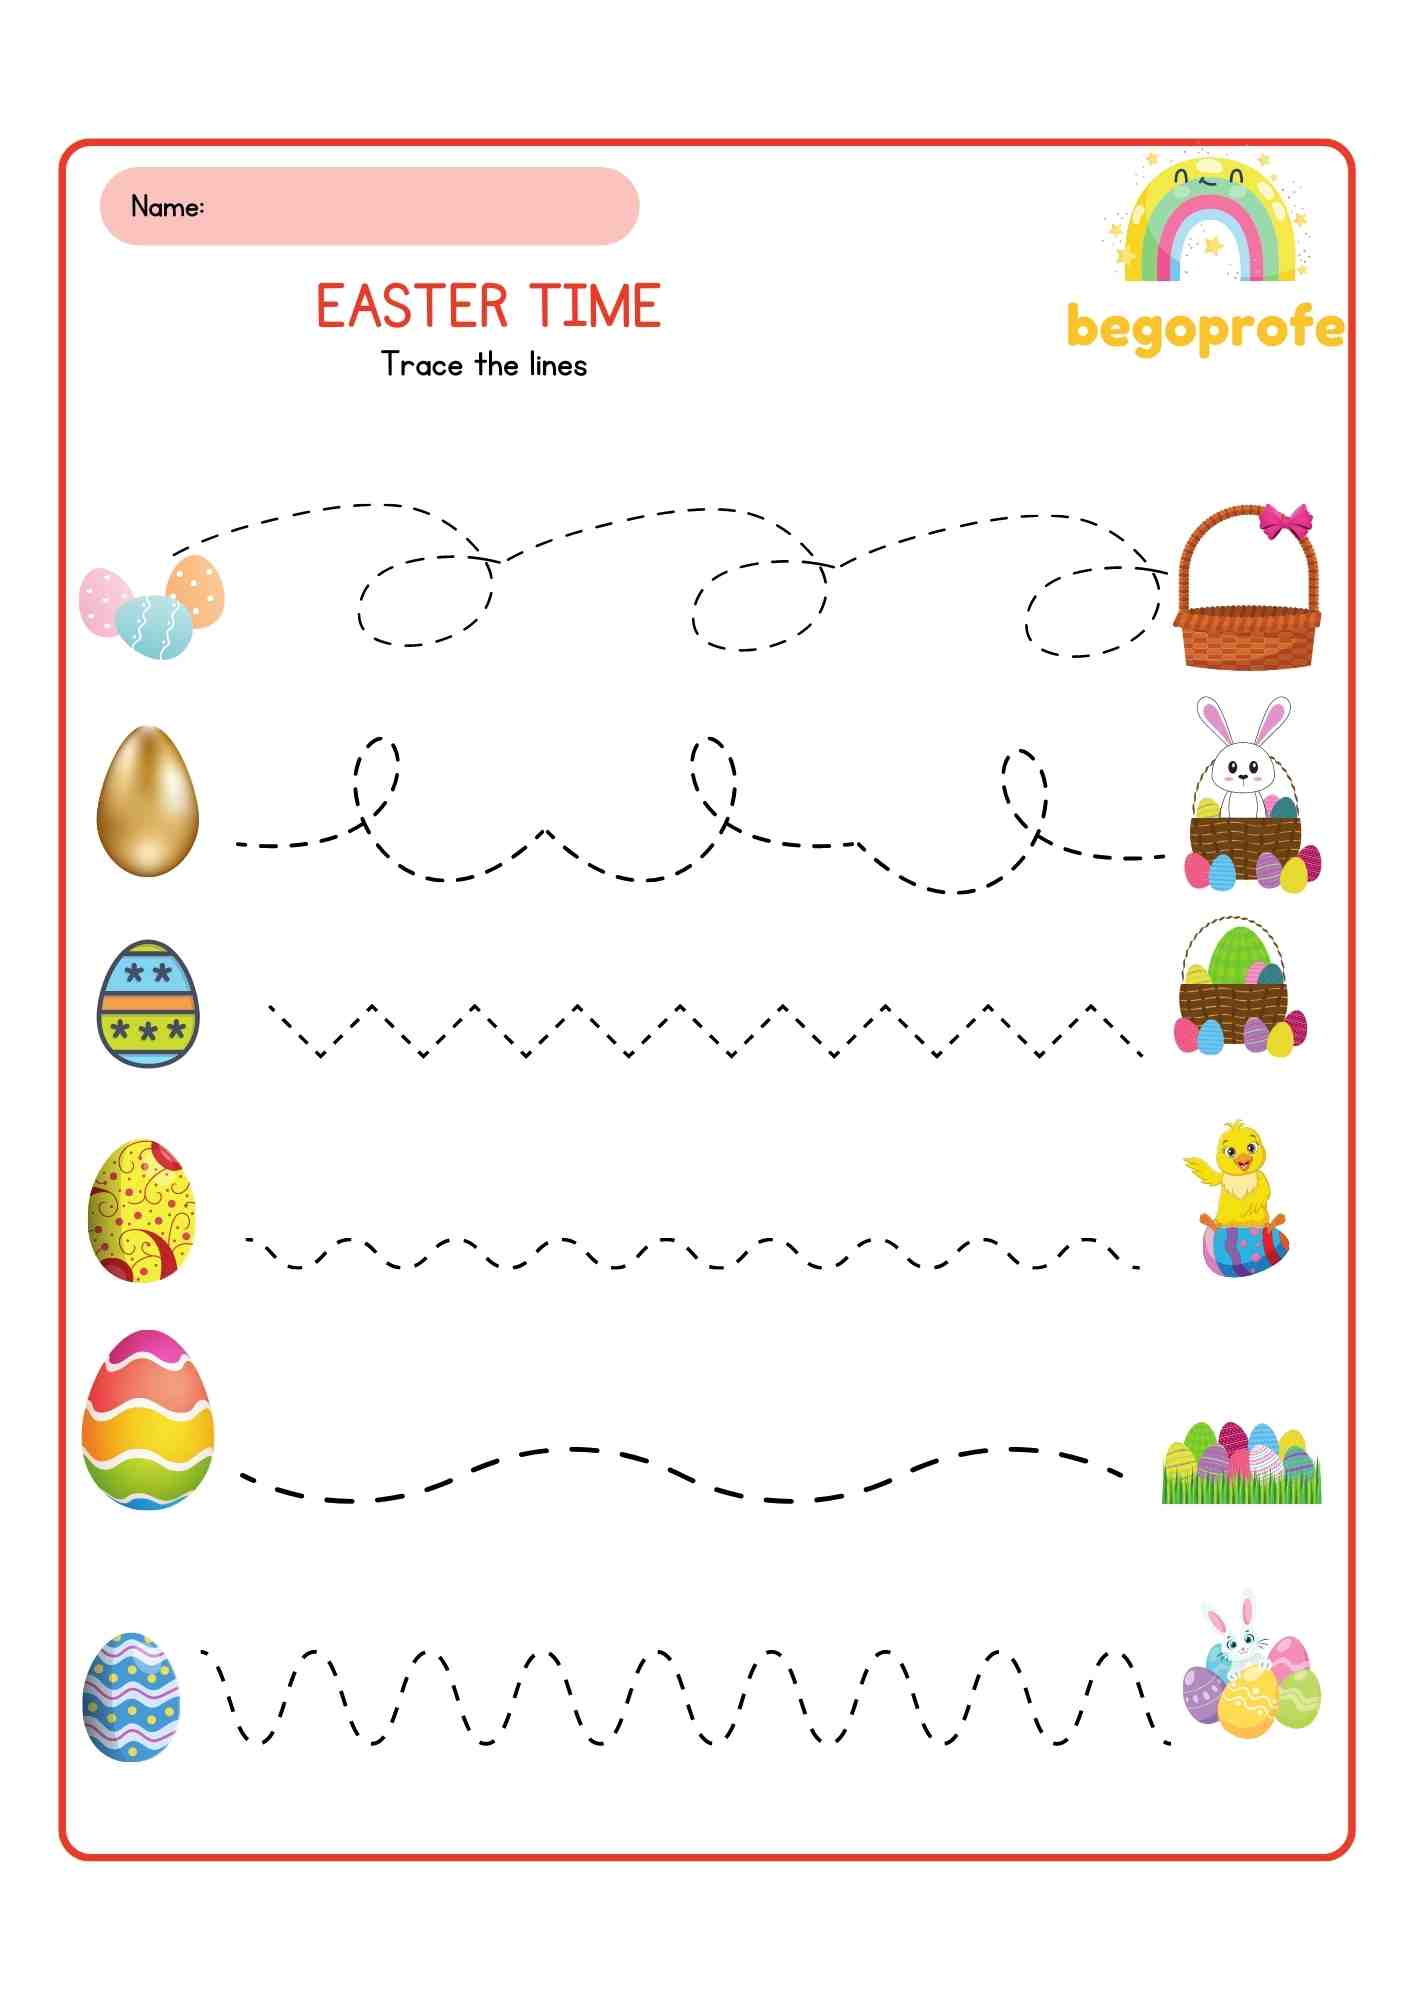 Easter tracing mat - Trazos de Pascua